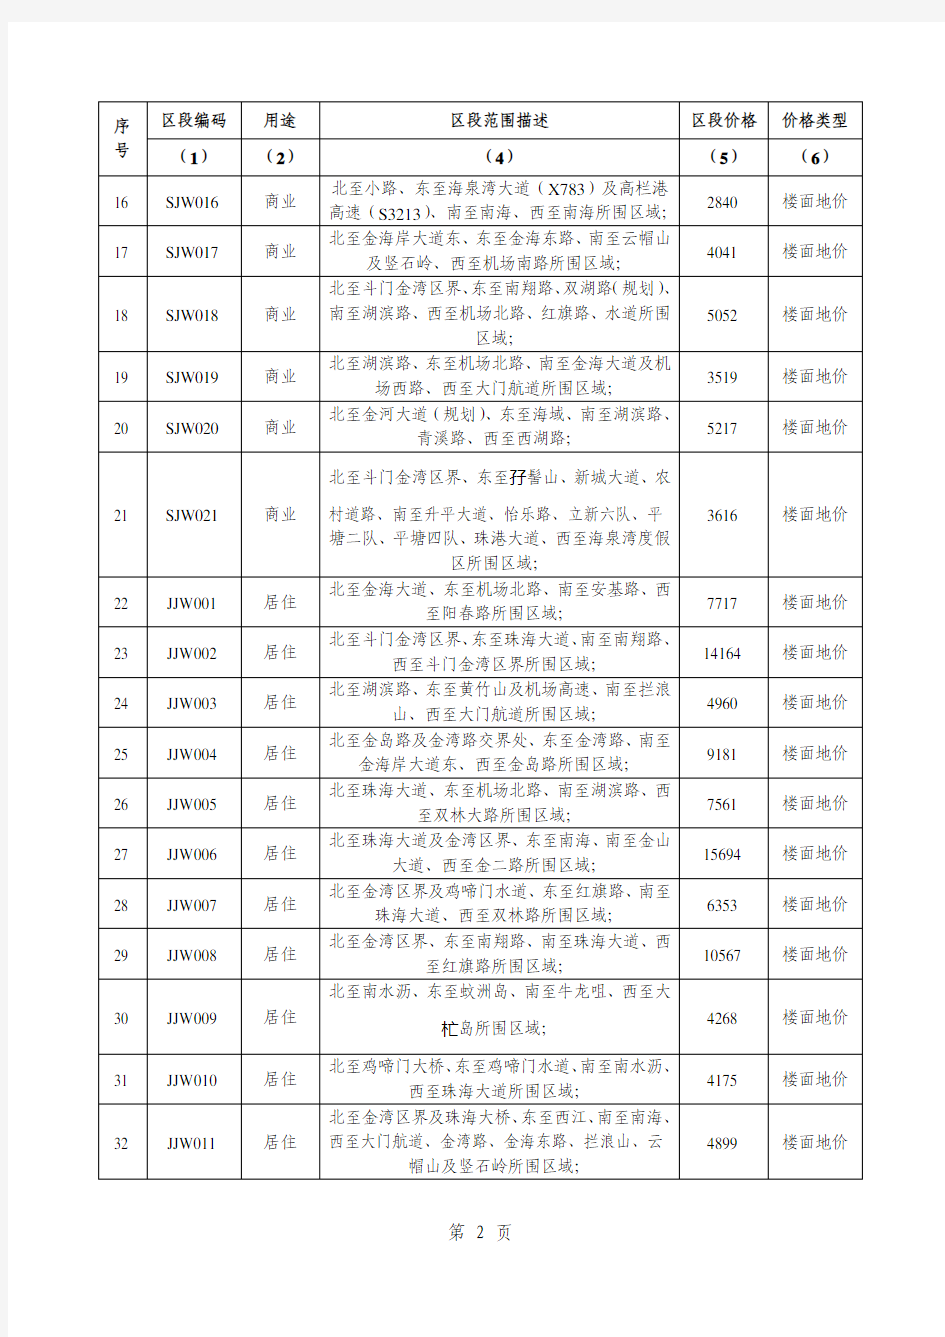 珠海市金湾区区段土地价格汇总表(2019年下半年)